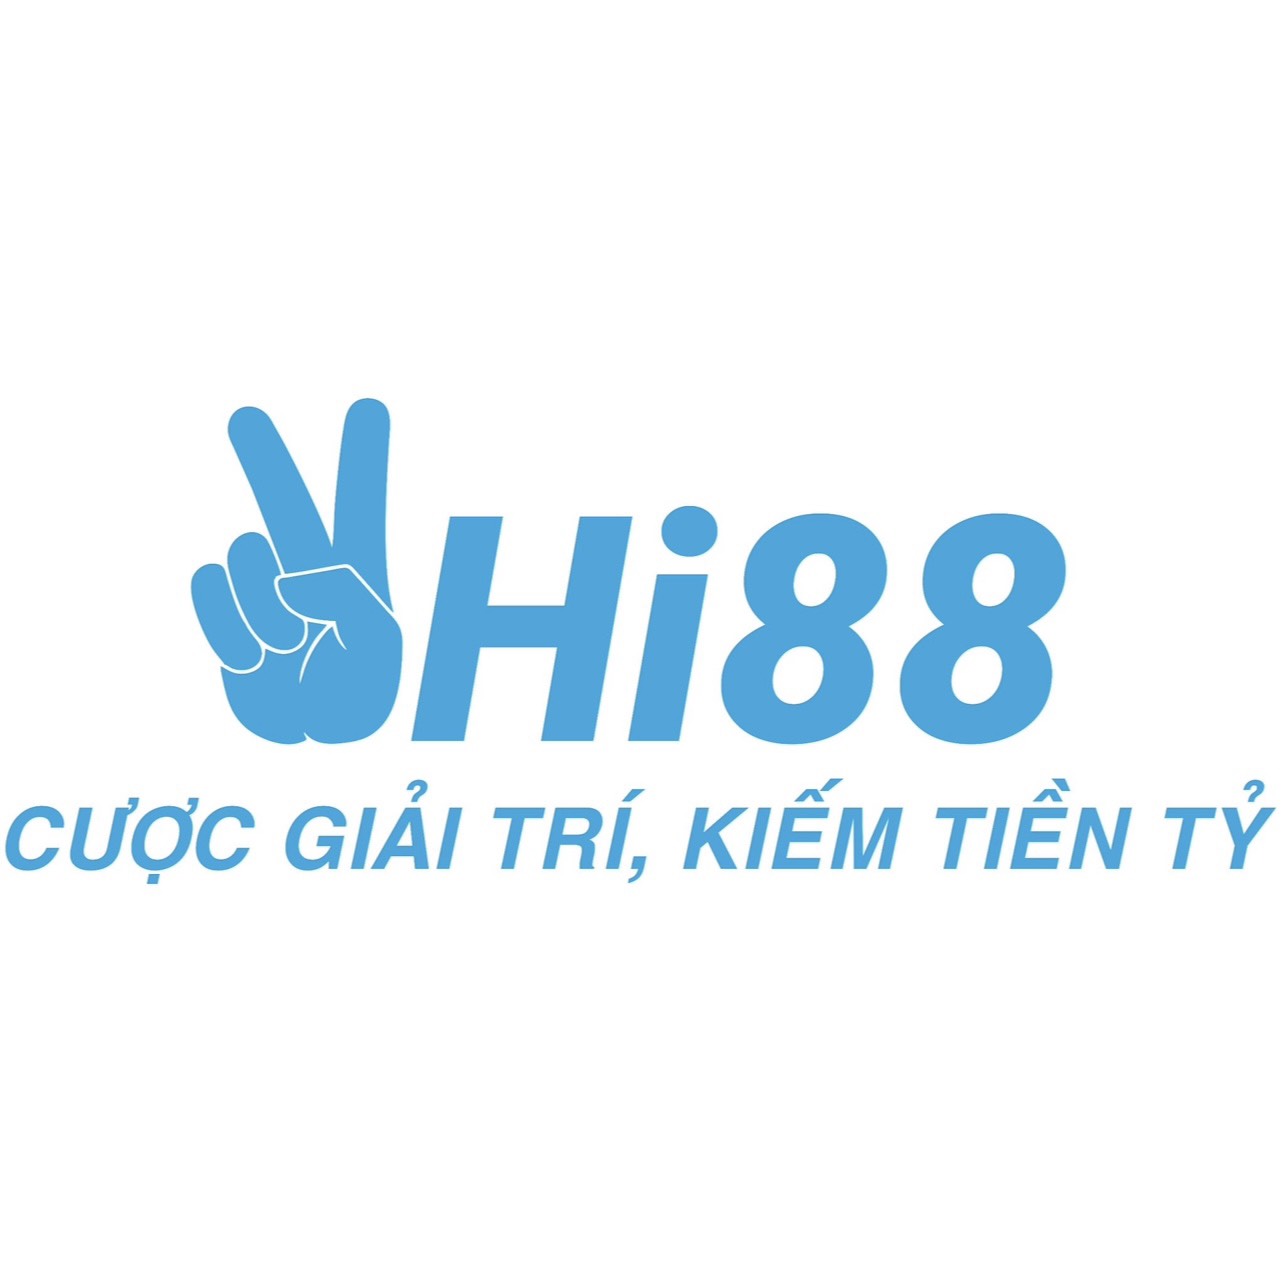 Hi88 org's avatar'